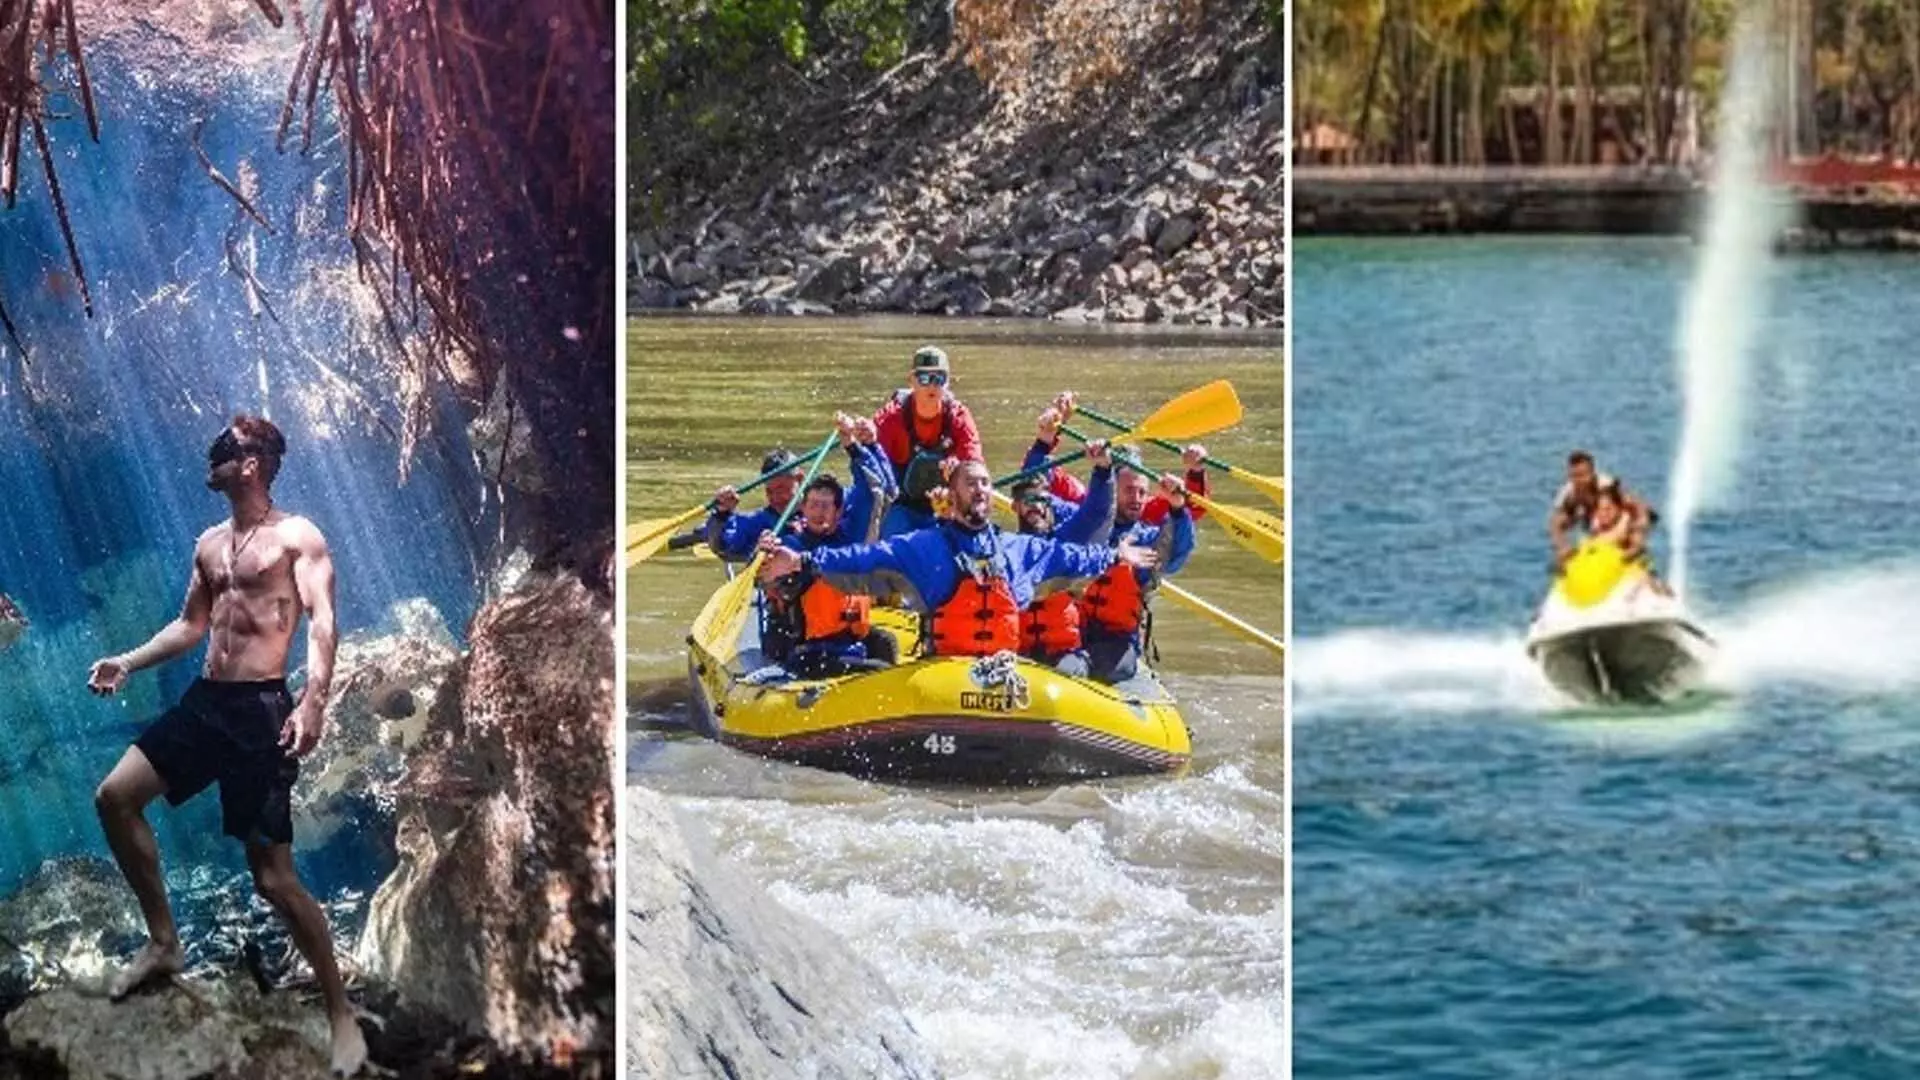 Water Sports: लेना चाहते हैं पानी के साथ रोमांच का अनुभव देश की ये 8 जगहें है वाटर स्पोर्ट्स